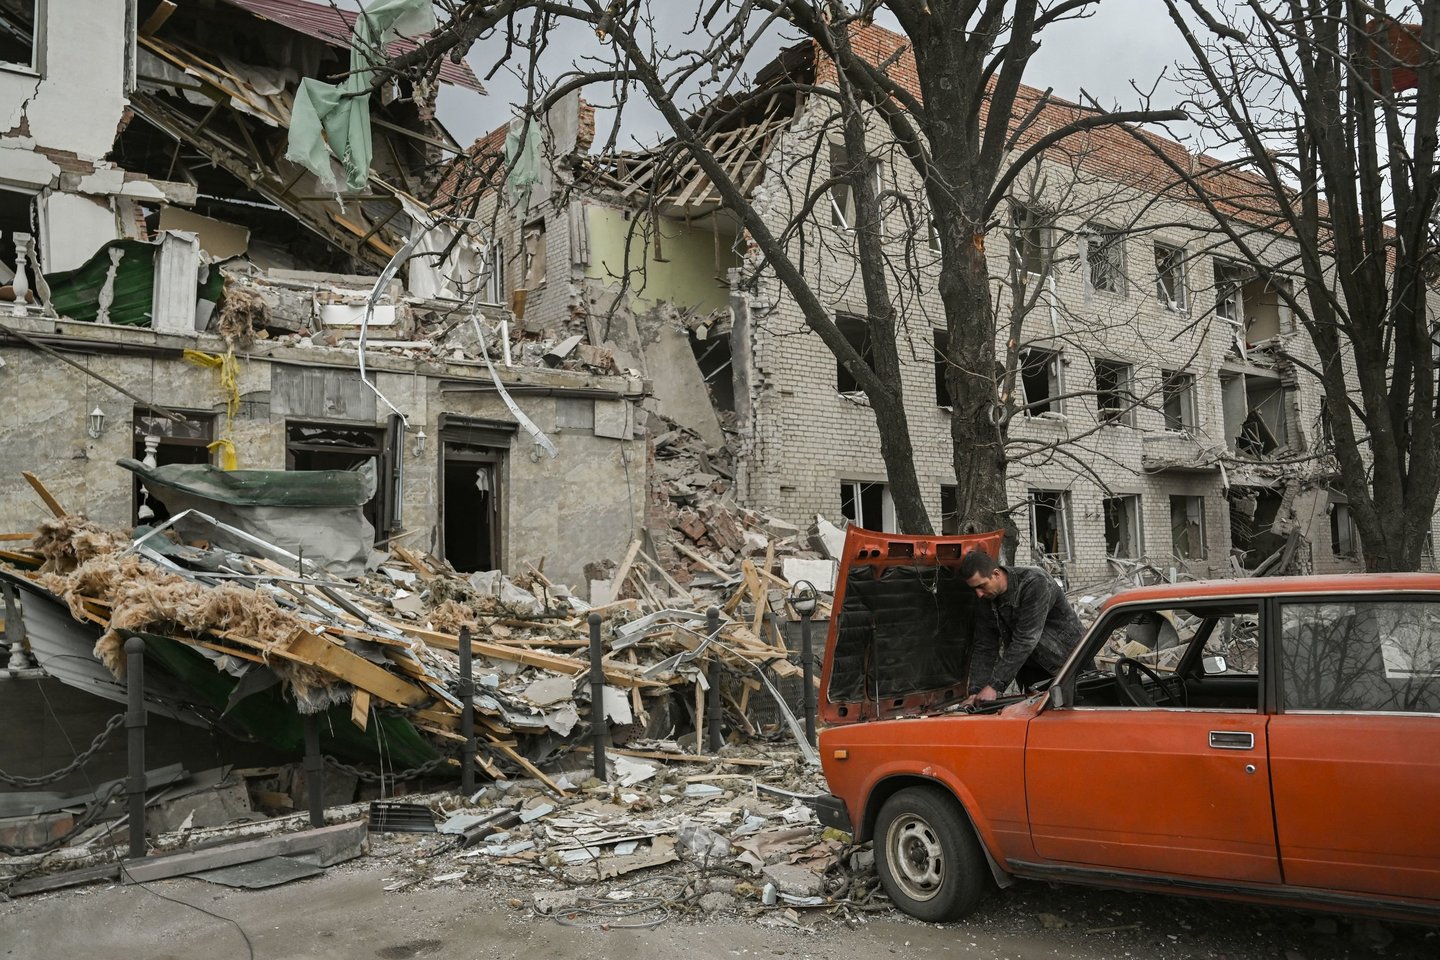 Karas Ukrainoje. Slovjanskas buvo pirmas miestas Donbaso regione, kuriame 2014 metais Rusijos remiamos grupuotės perėmė valdžią.<br>AFP/Scanpix nuotr.